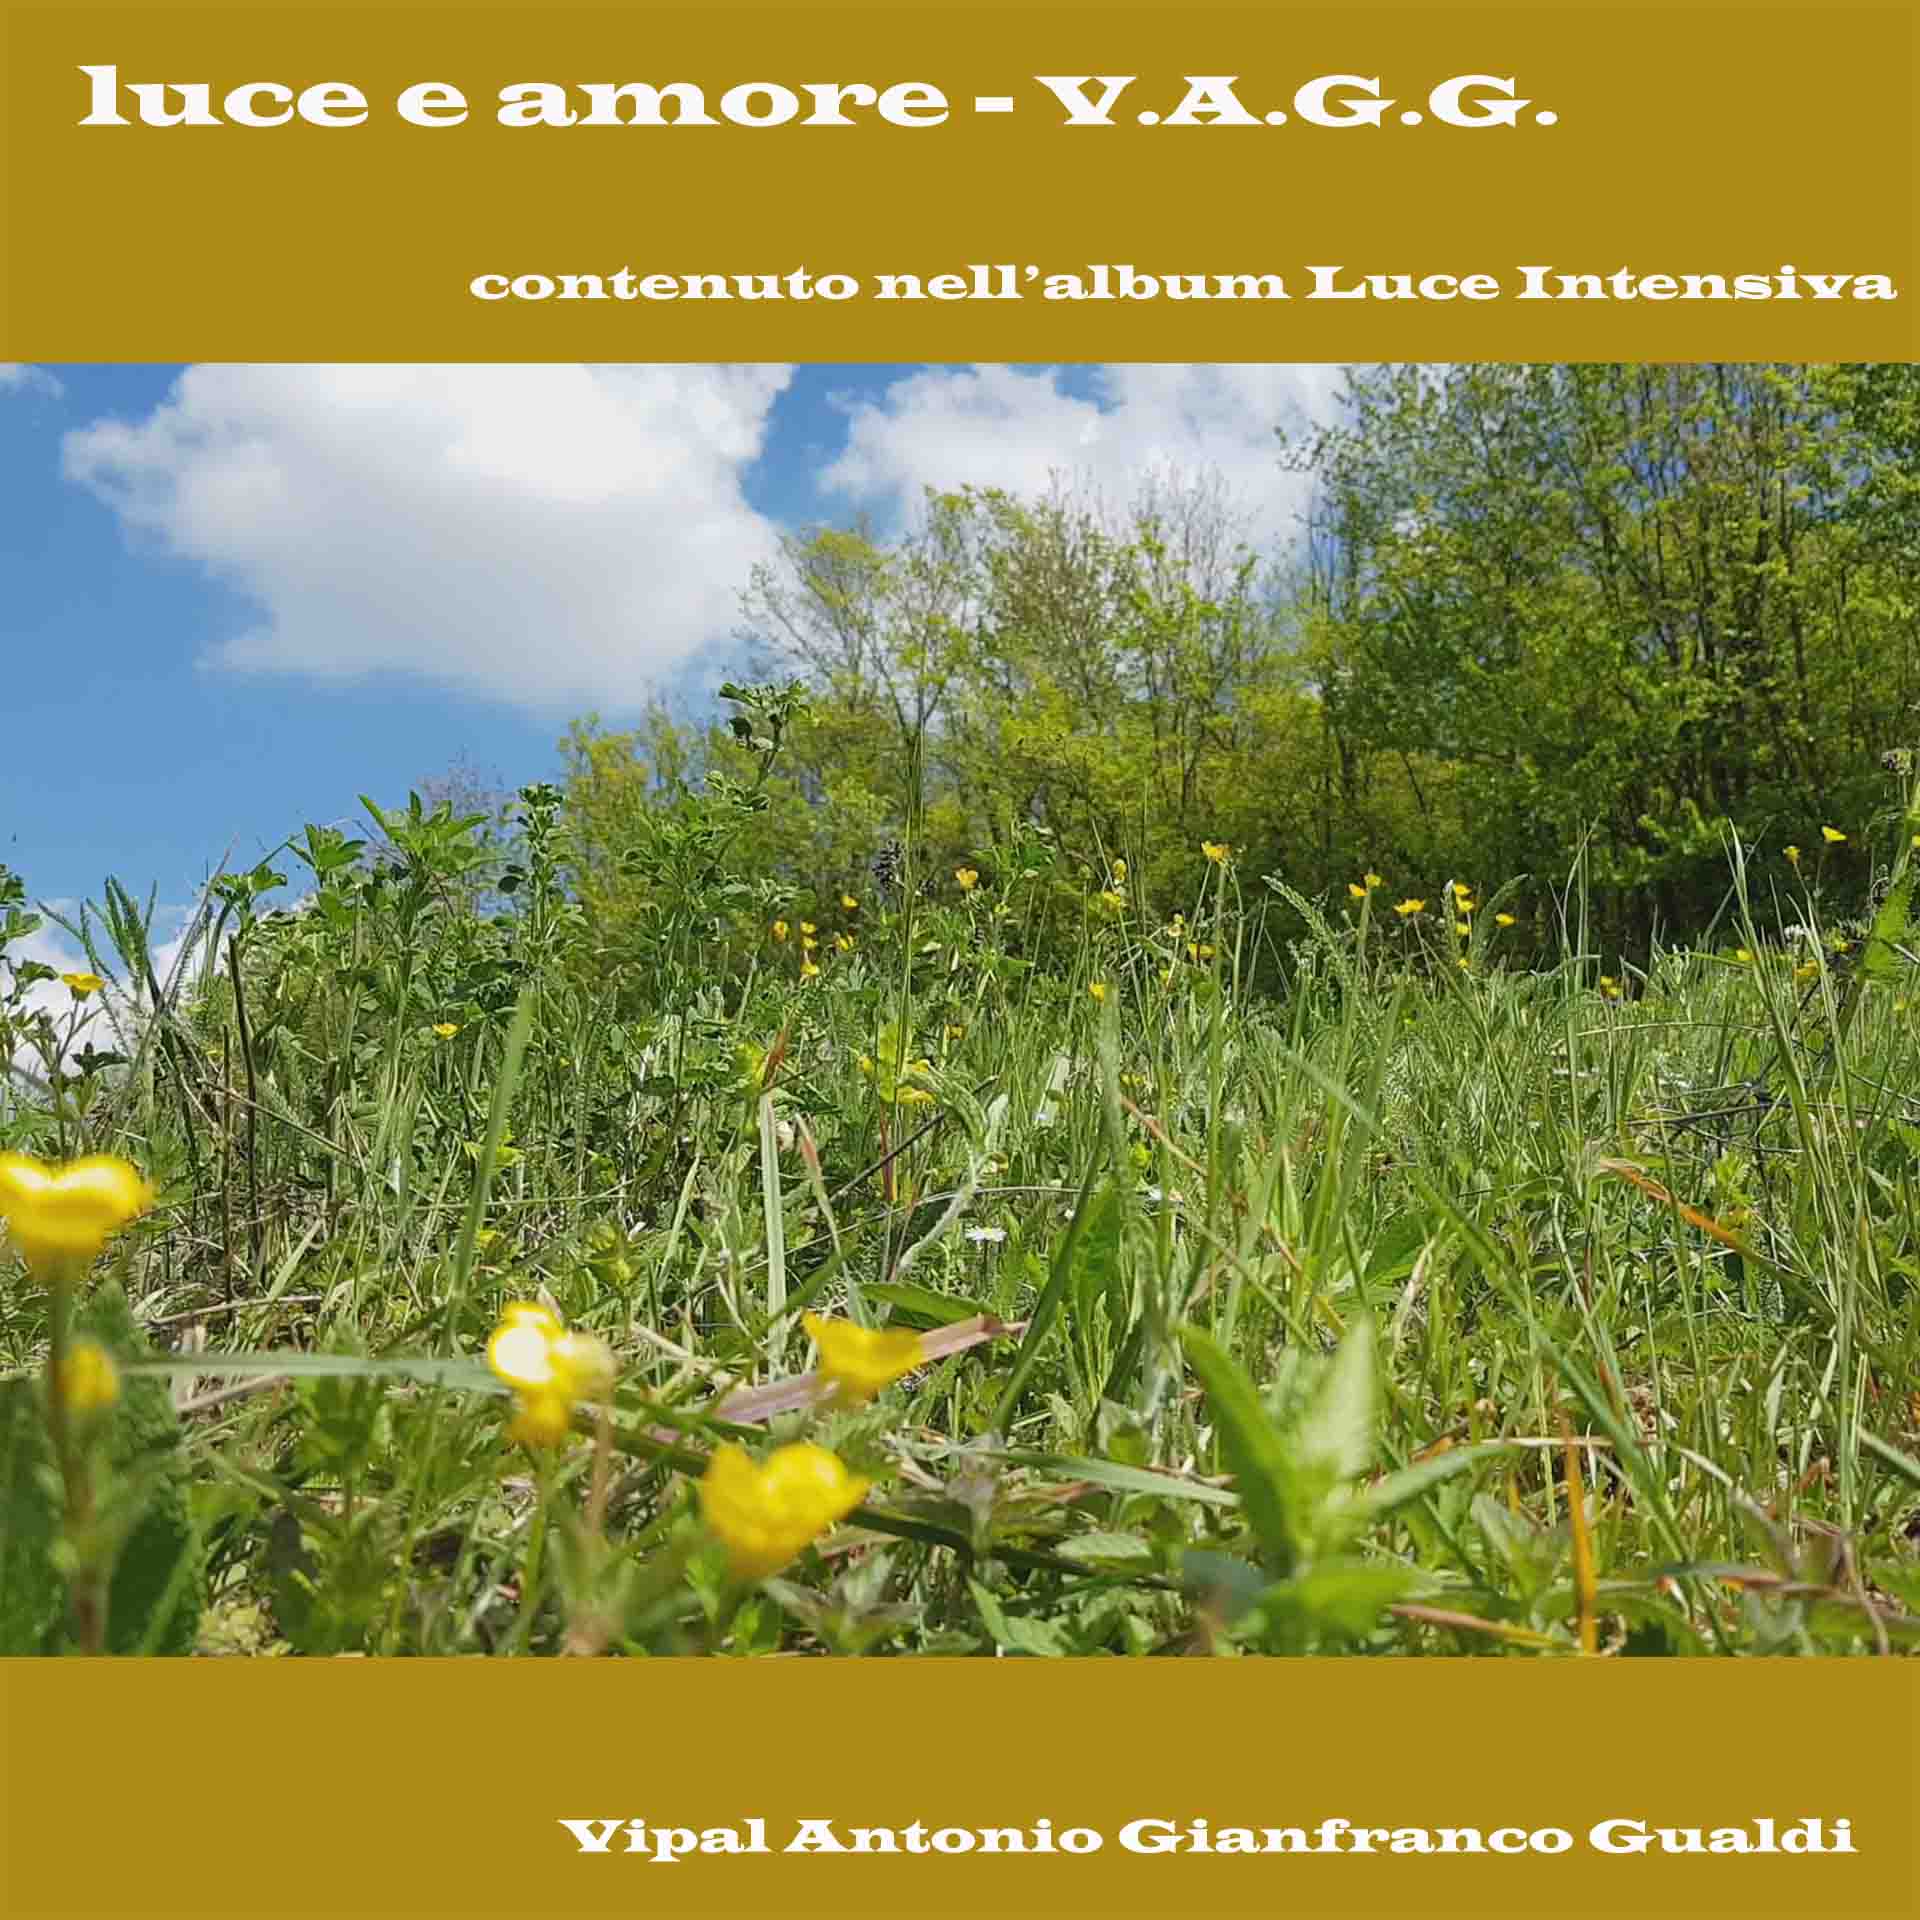 Copertina traccia " Luce e amore Album " Luce intensiva di V.A.G.G. Vipal Antonio Gianfranco Gualdi